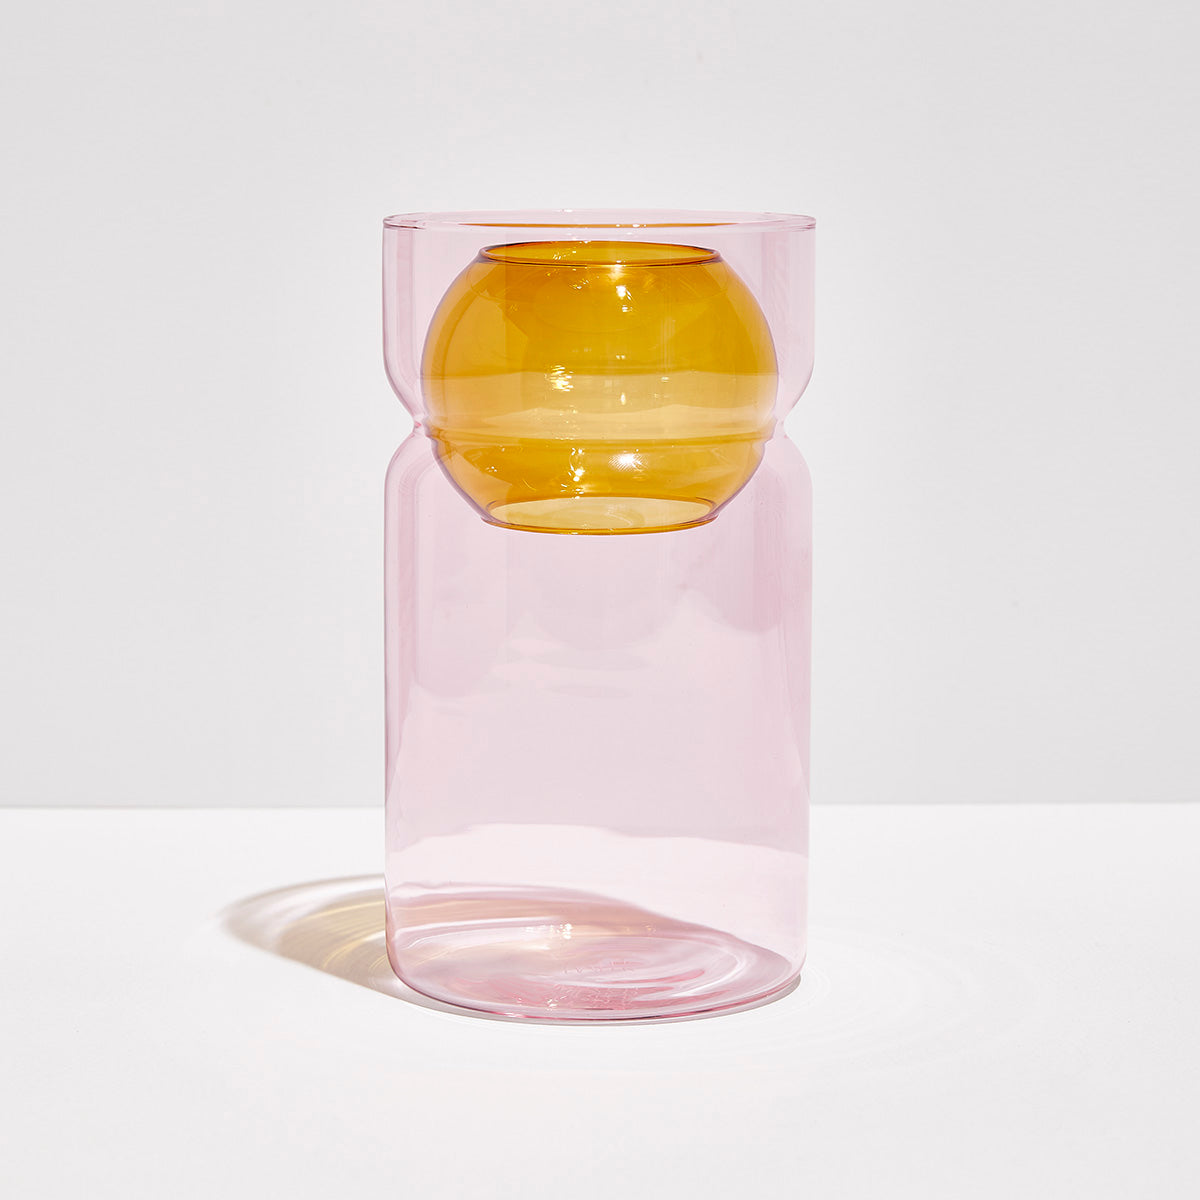 Balance Vase - Pink & Amber